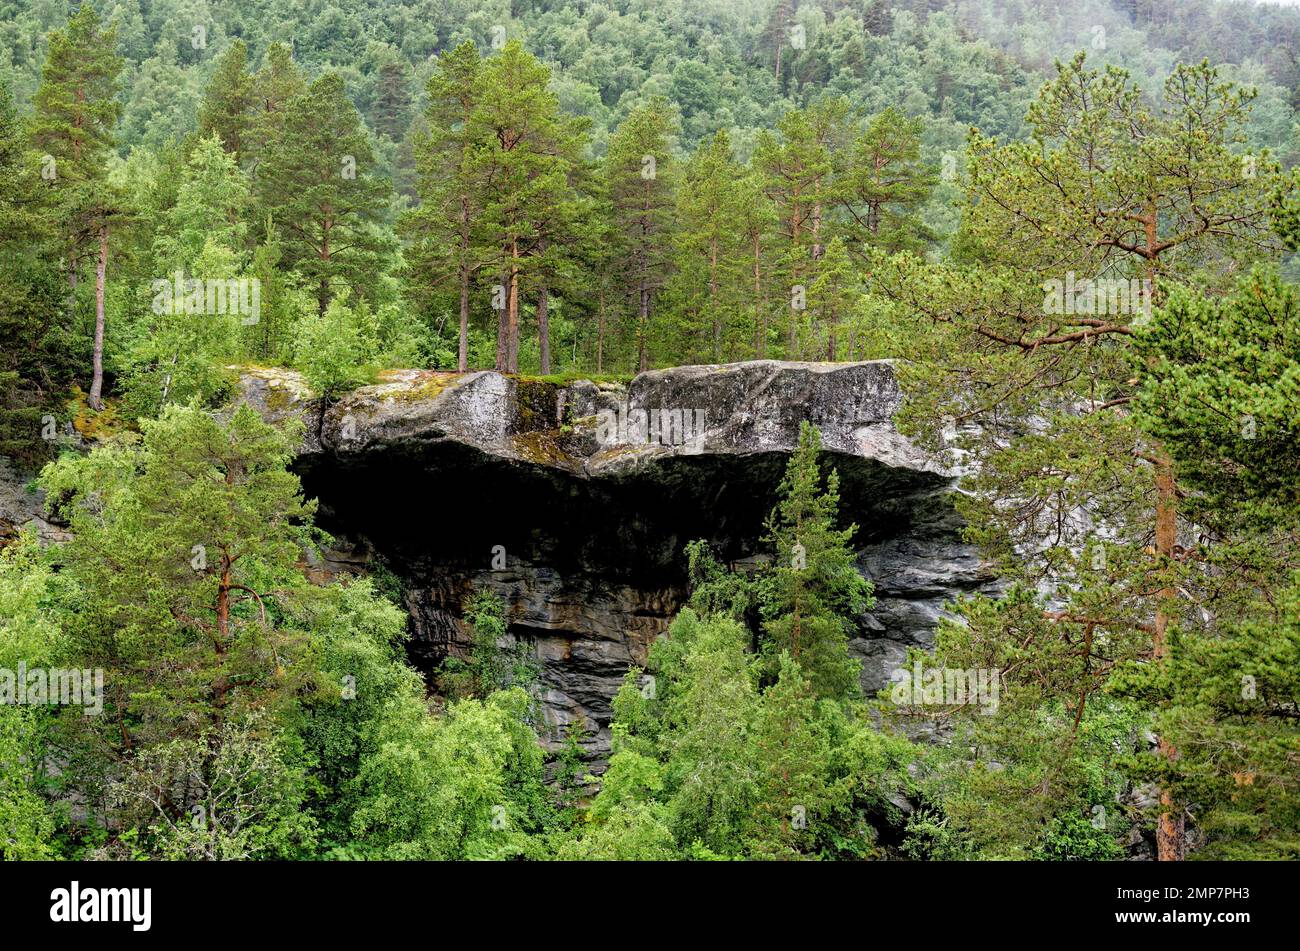 Magnifique paysage norvégien en été - Andalsnes - Norvège. 12.06.2012 Banque D'Images